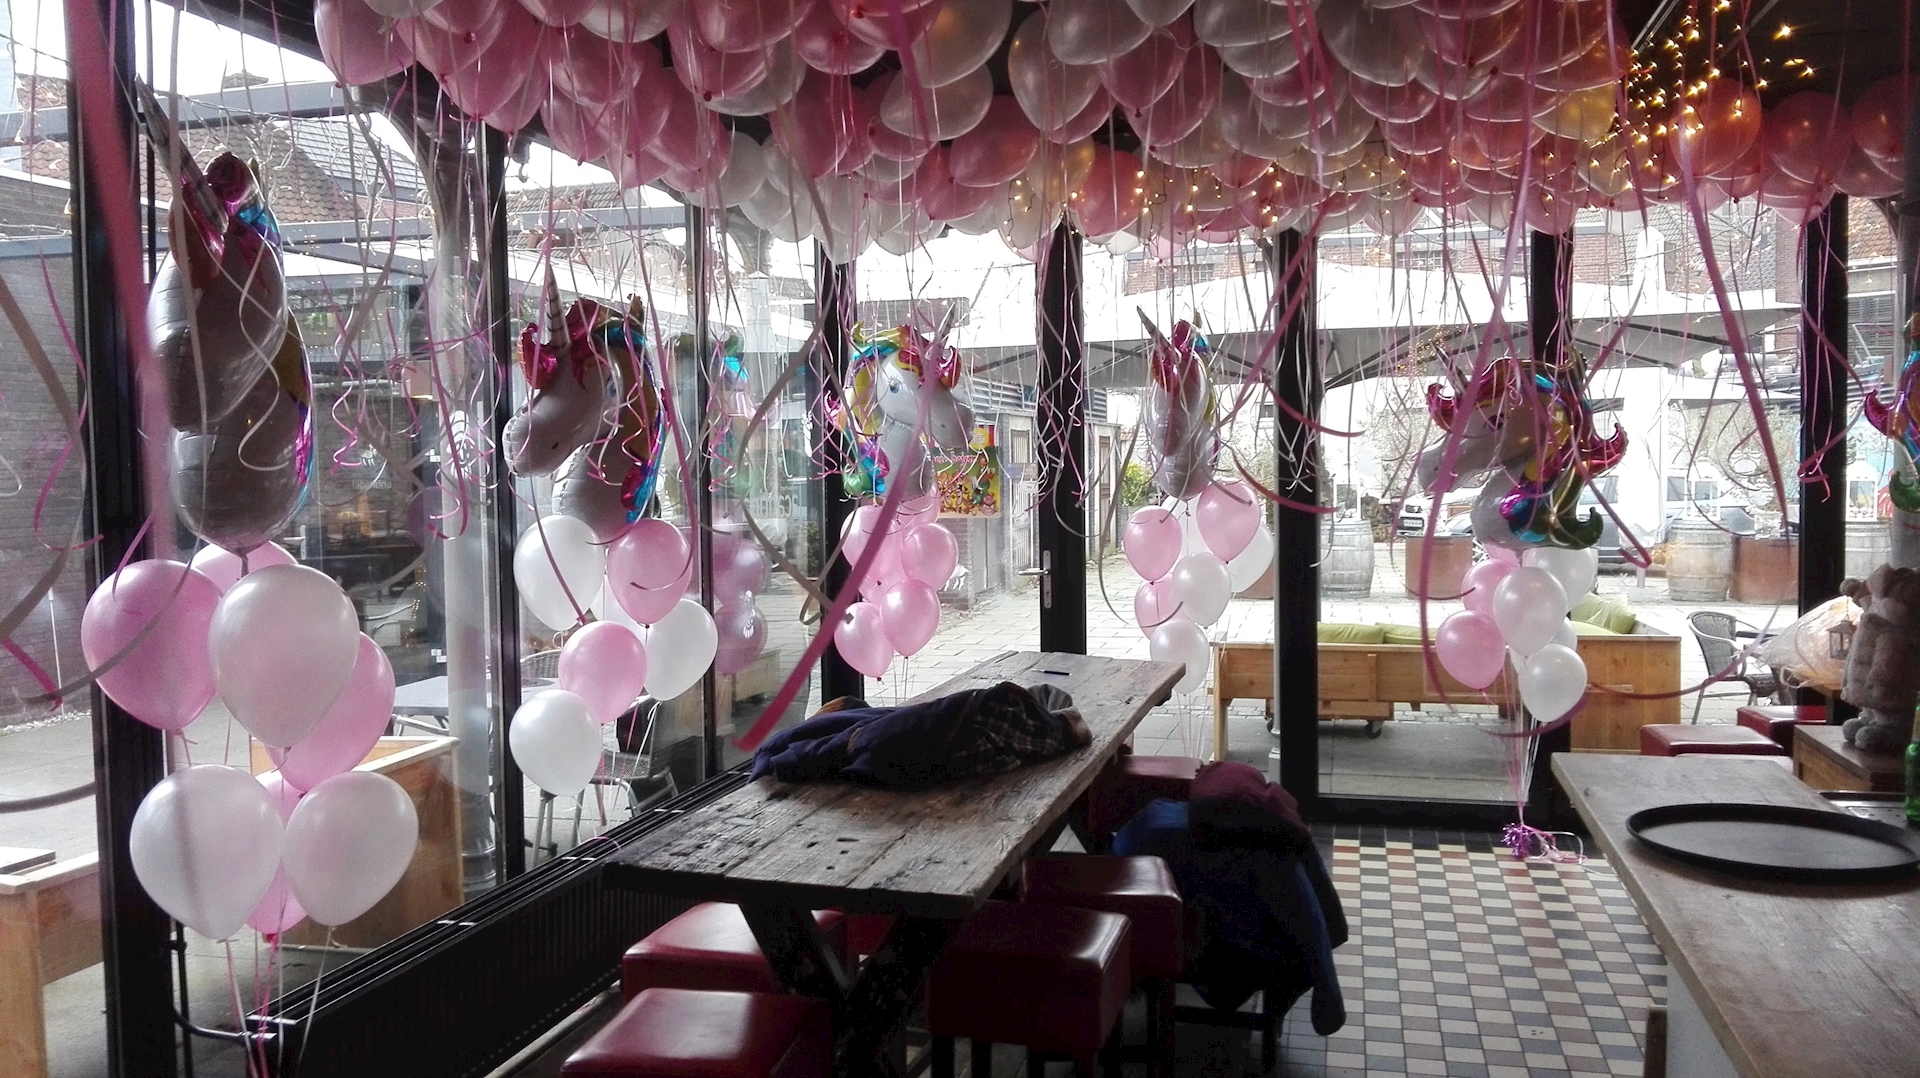 kinderfeest met plafond vol helium ballonnen en trossen met op top Unicorn ofwel eenhoorn